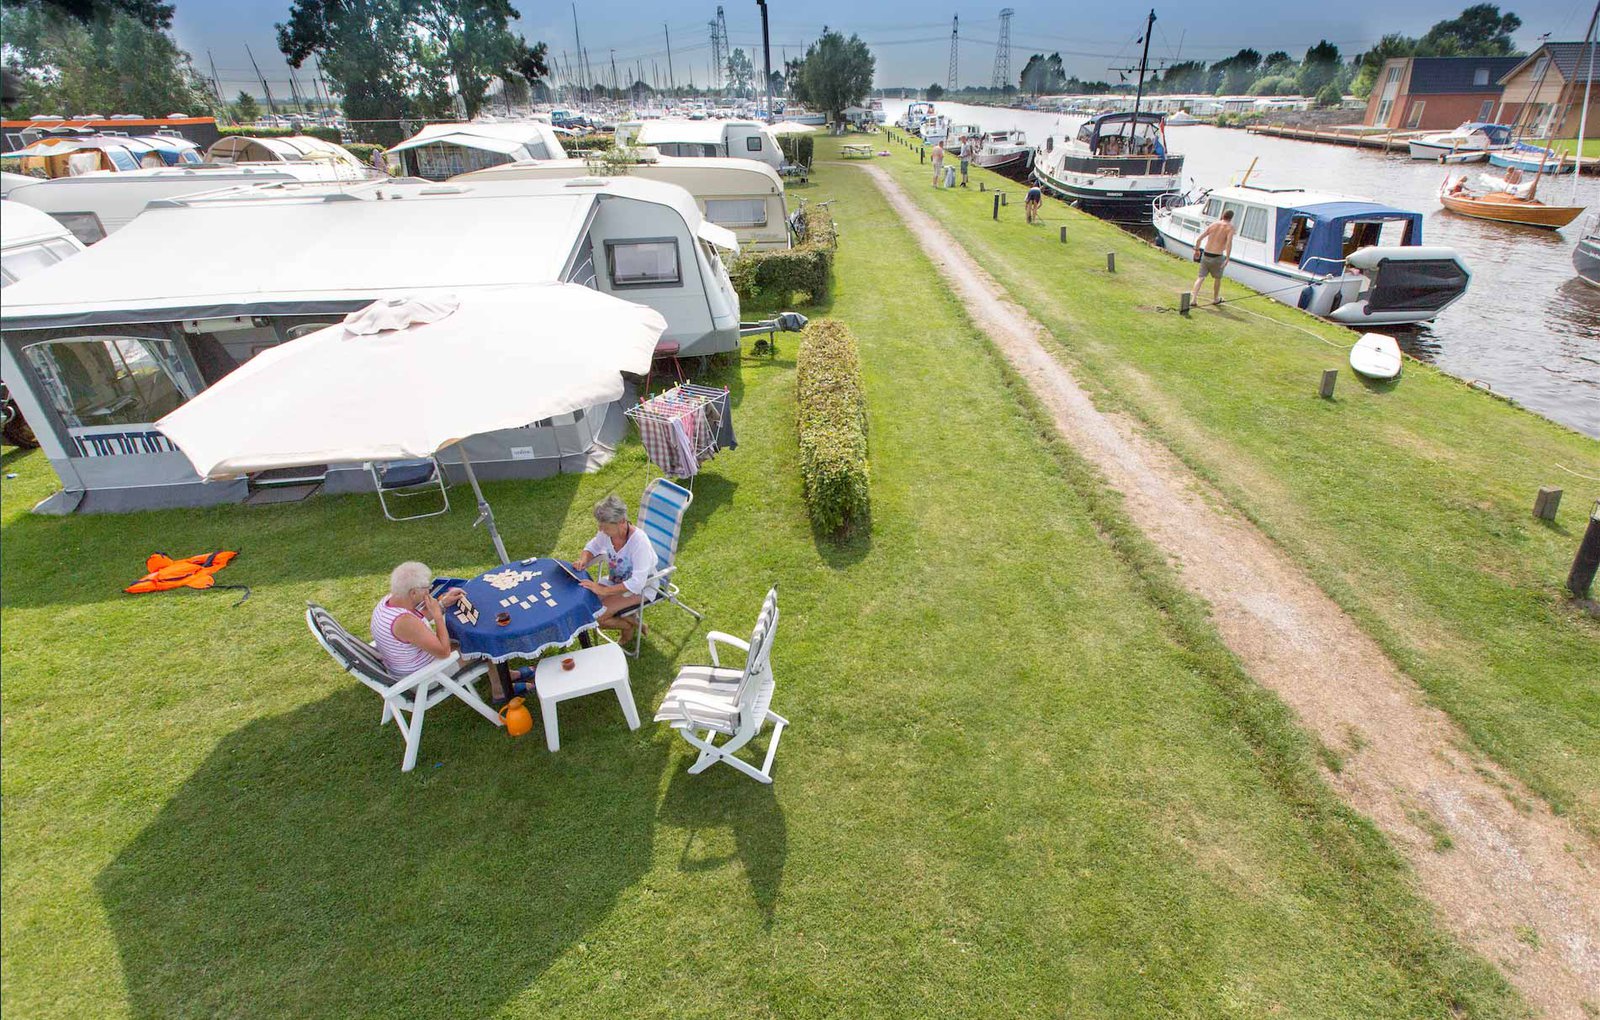 Camping Friesland is kamperen aan het water met caravan of tent